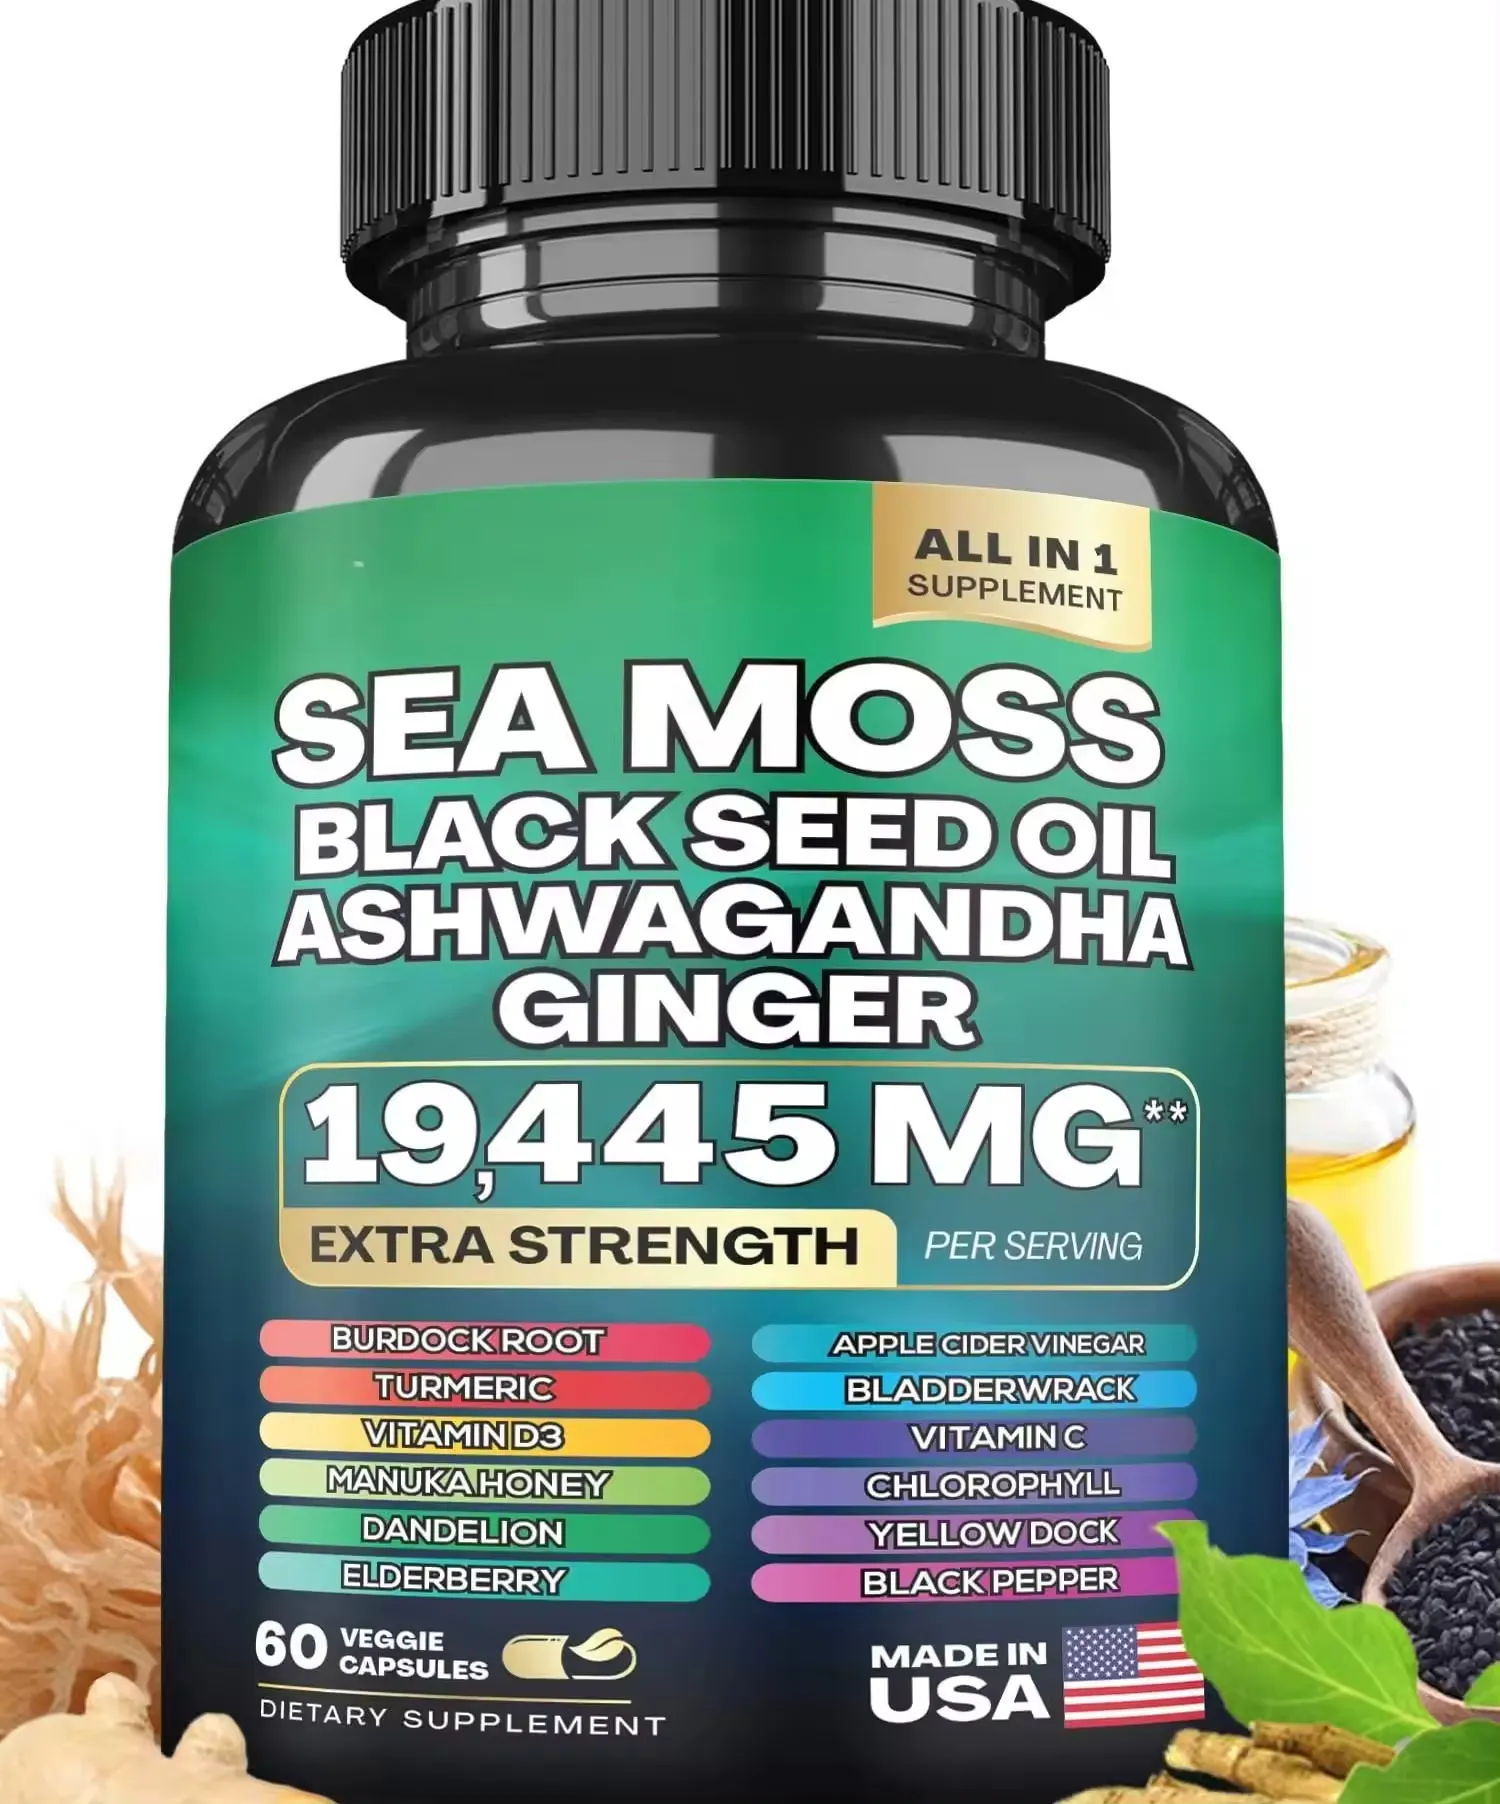 Capsules de mousse de mer 3000mg Huile de graines noires Ashwagandha Curcuma Bladderwrack Bardane Vitamine D3 Supplément de capsule de mousse de mer